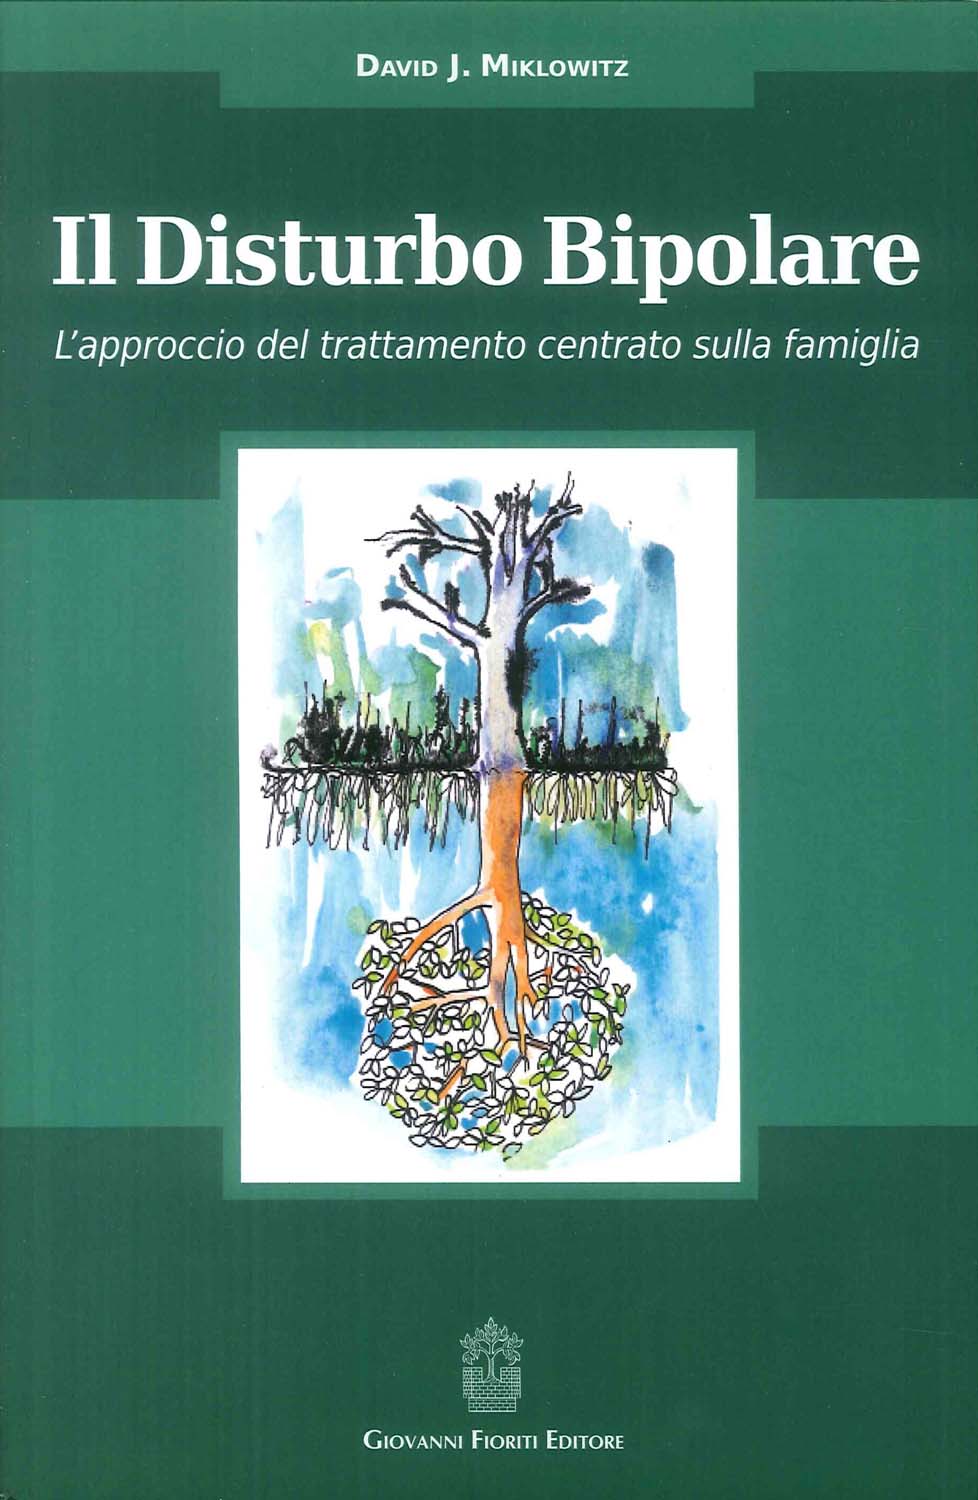 Libri Miklowitz David J. - Il Disturbo Bipolare. L'approccio Del Trattamento Centrato Sulla Famiglia NUOVO SIGILLATO, EDIZIONE DEL 04/04/2016 SUBITO DISPONIBILE